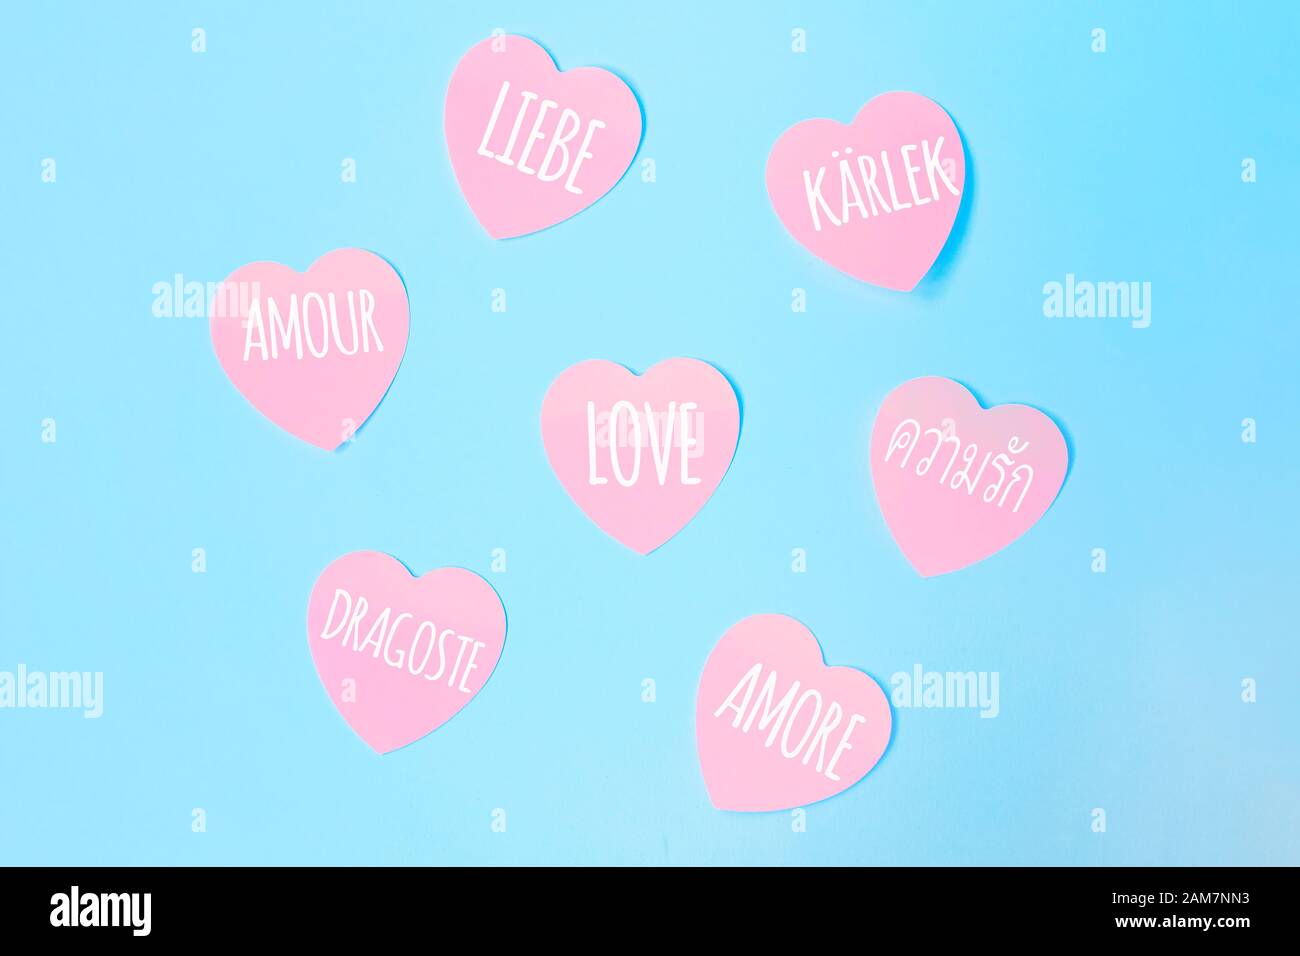 Alcune note adesive rosa a forma di cuore con la parola Love scritta in diverse lingue, come inglese, spagnolo, italiano, francese, olandese su sfondo blu. San Valentino, concetto di amore. Foto Stock